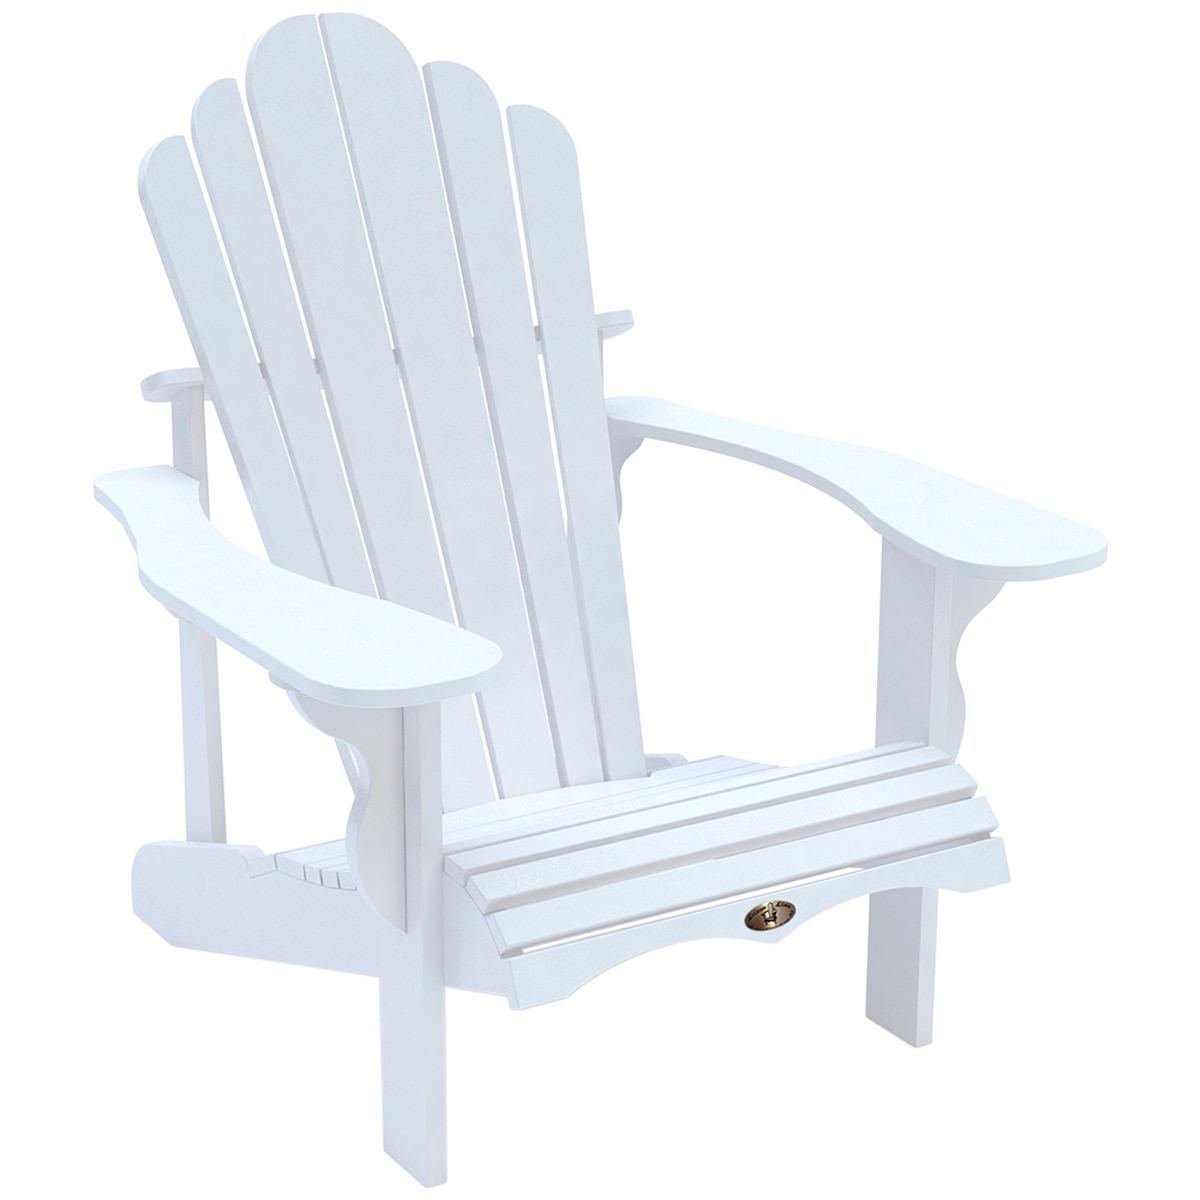 Leisure Line Adirondack Chair White Costco Australia